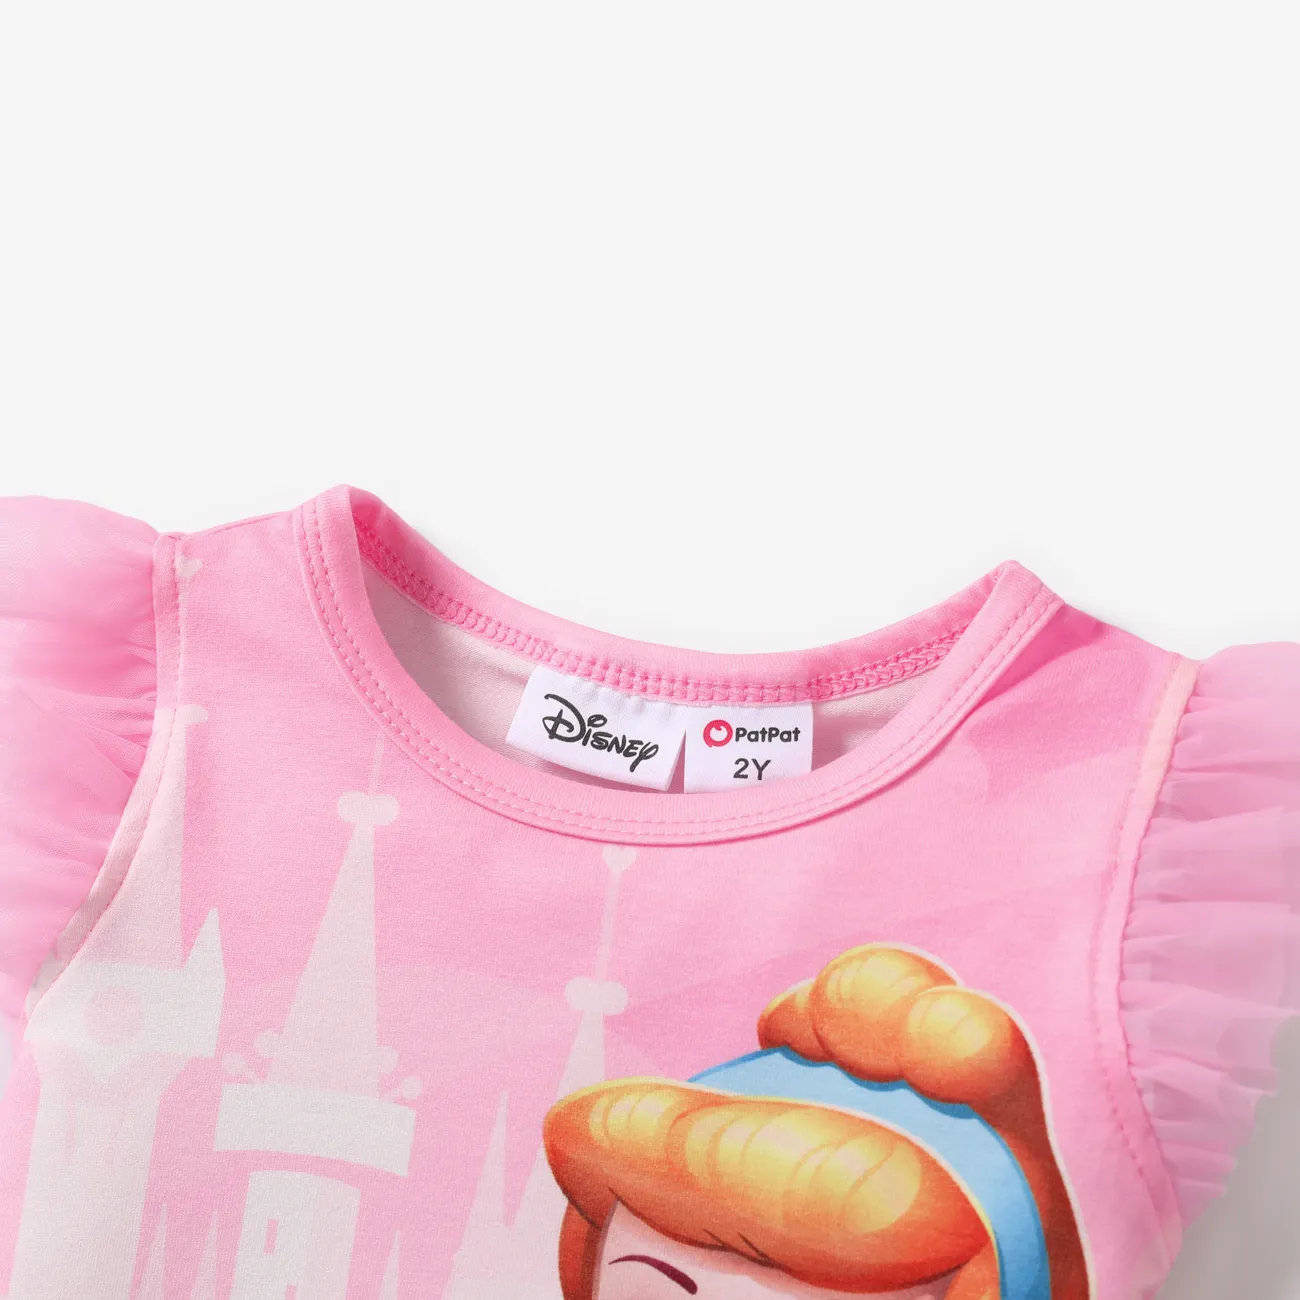 Disney Princess Toddler Girl Naia™ Character Print with Ruffled Mesh Sleeve Top Pink big image 1